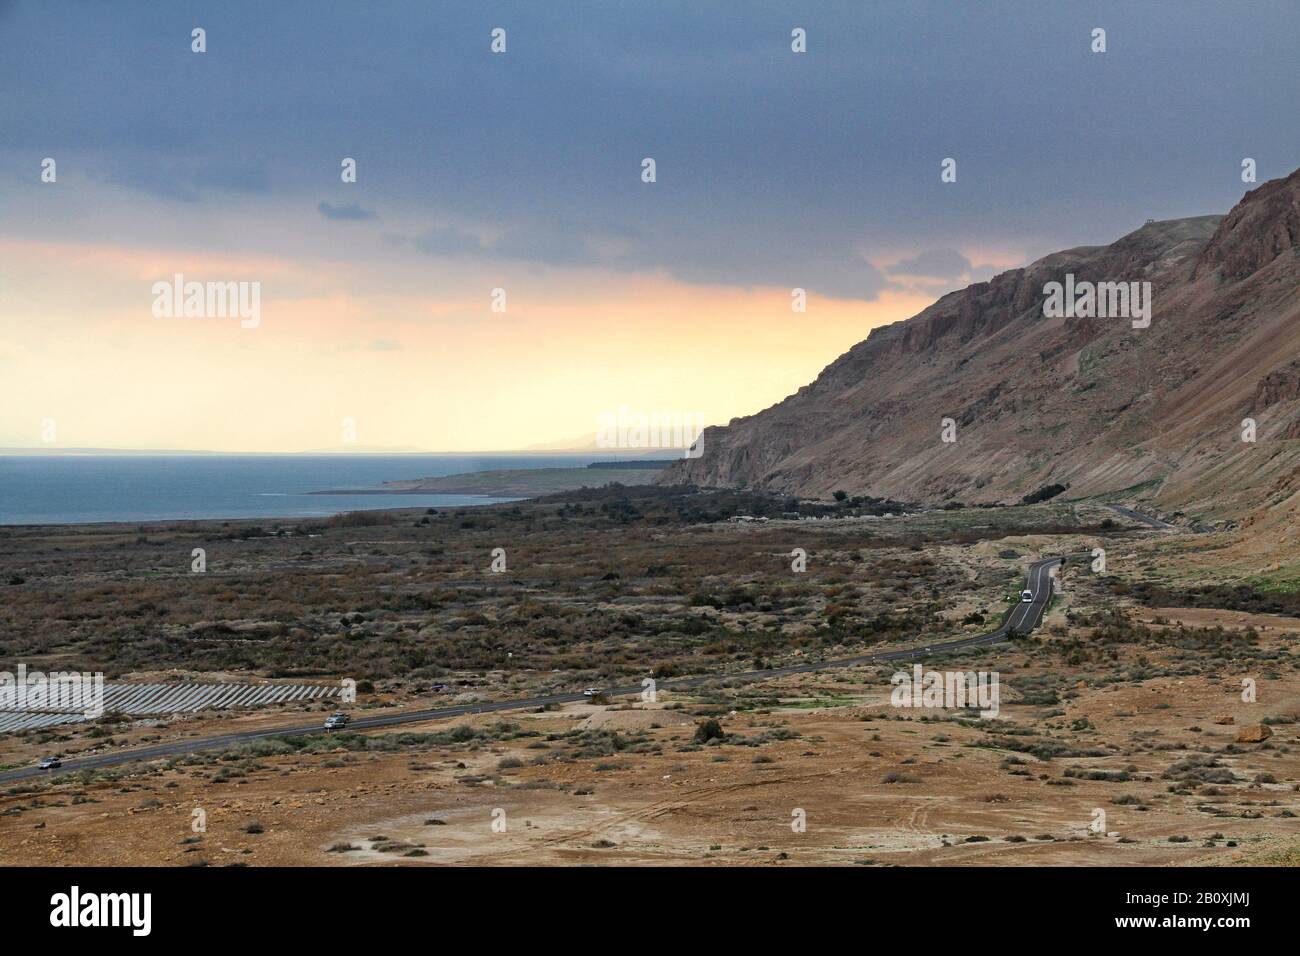 Il Qumran National Park offre una vista panoramica sul Mar Morto e sulle montagne circostanti e sul deserto lungo l'autostrada 90 in Israele. Foto Stock